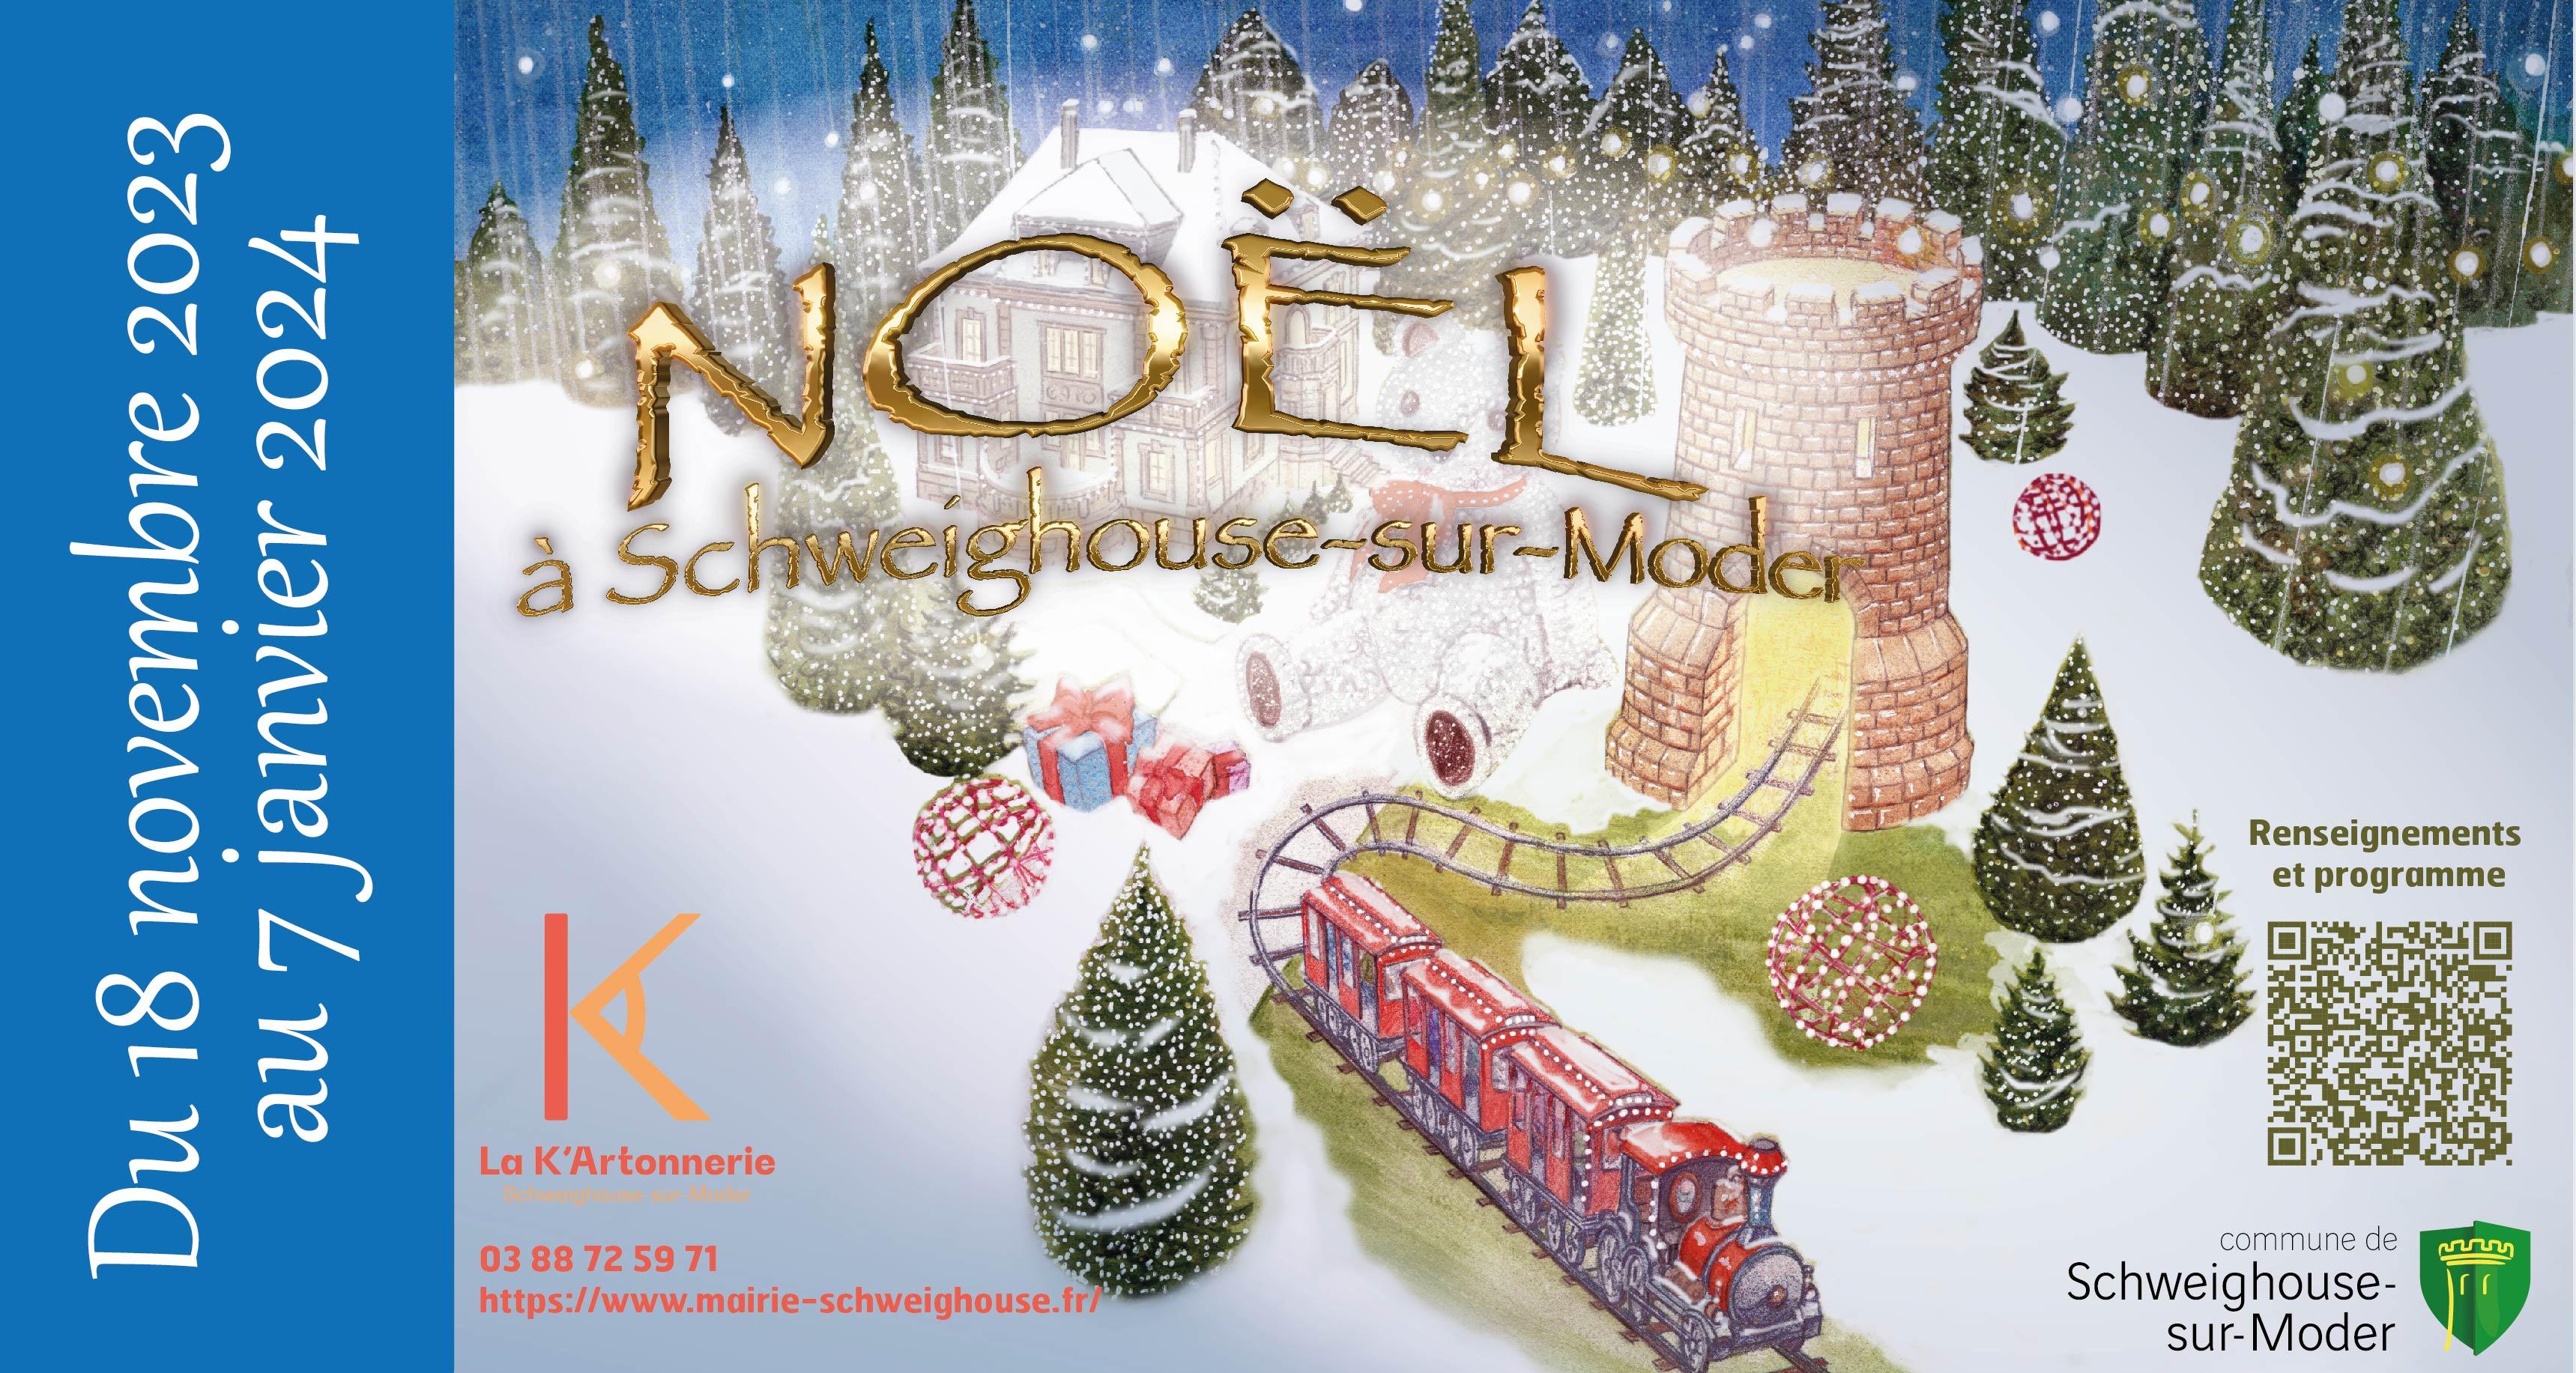 Noël à Schweighouse-sur-Moder : marché, illuminations, feu d'artifice et spectacles de feu et ateliers pour les enfants 